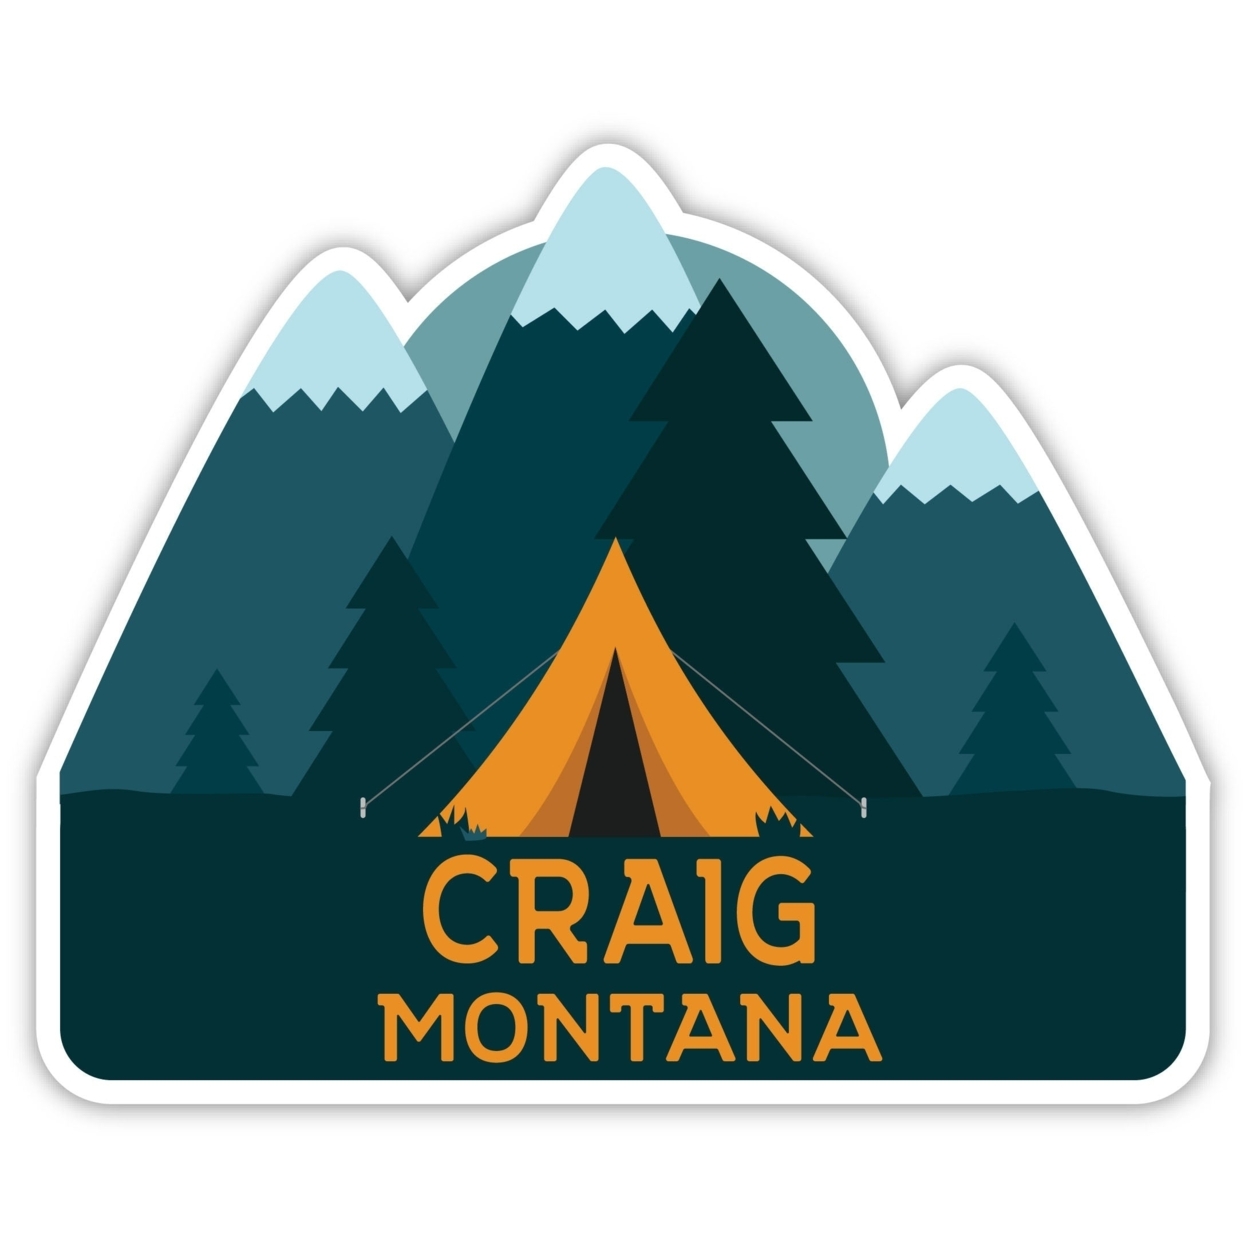 Craig Montana Souvenir Decorative Stickers (Choose Theme And Size) - Single Unit, 10-Inch, Tent